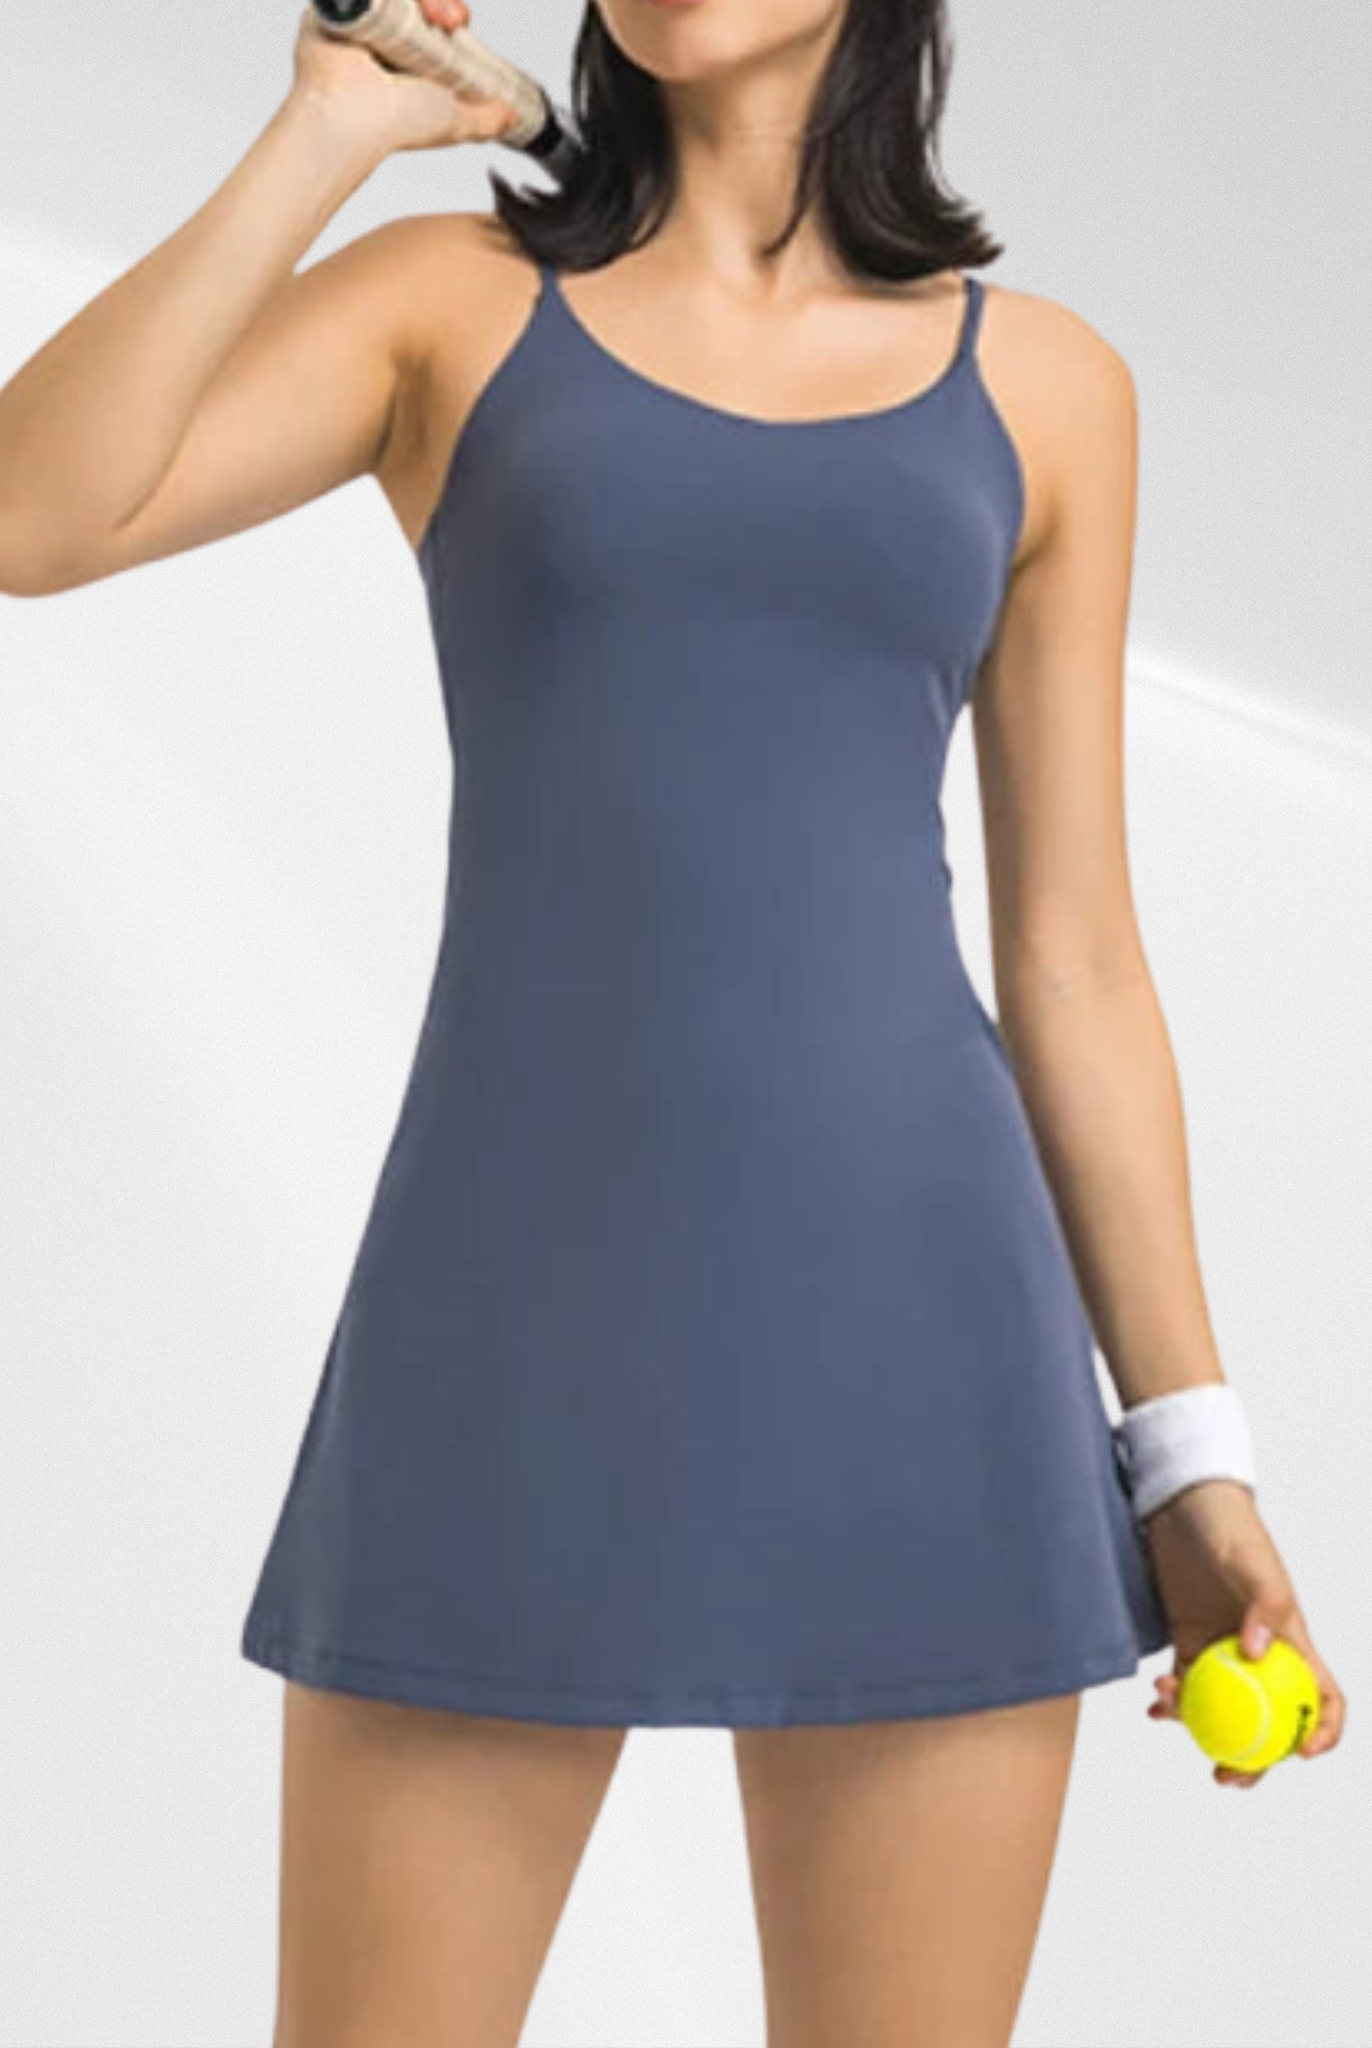 Match Made Tennis Dress